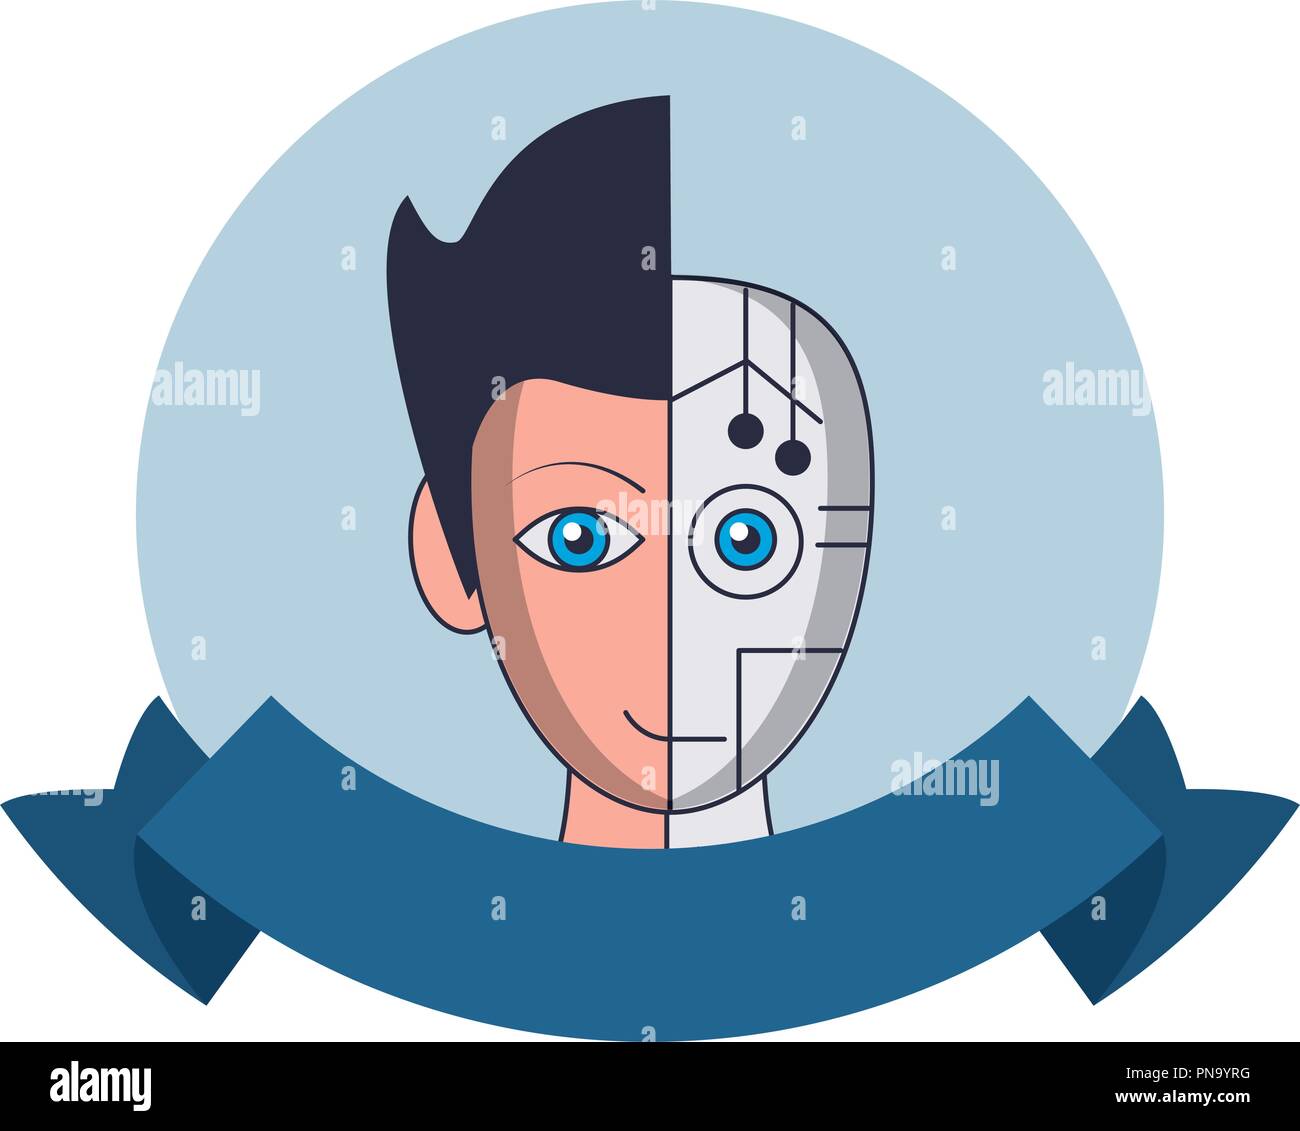 Robot human face round emblem Stock Vector